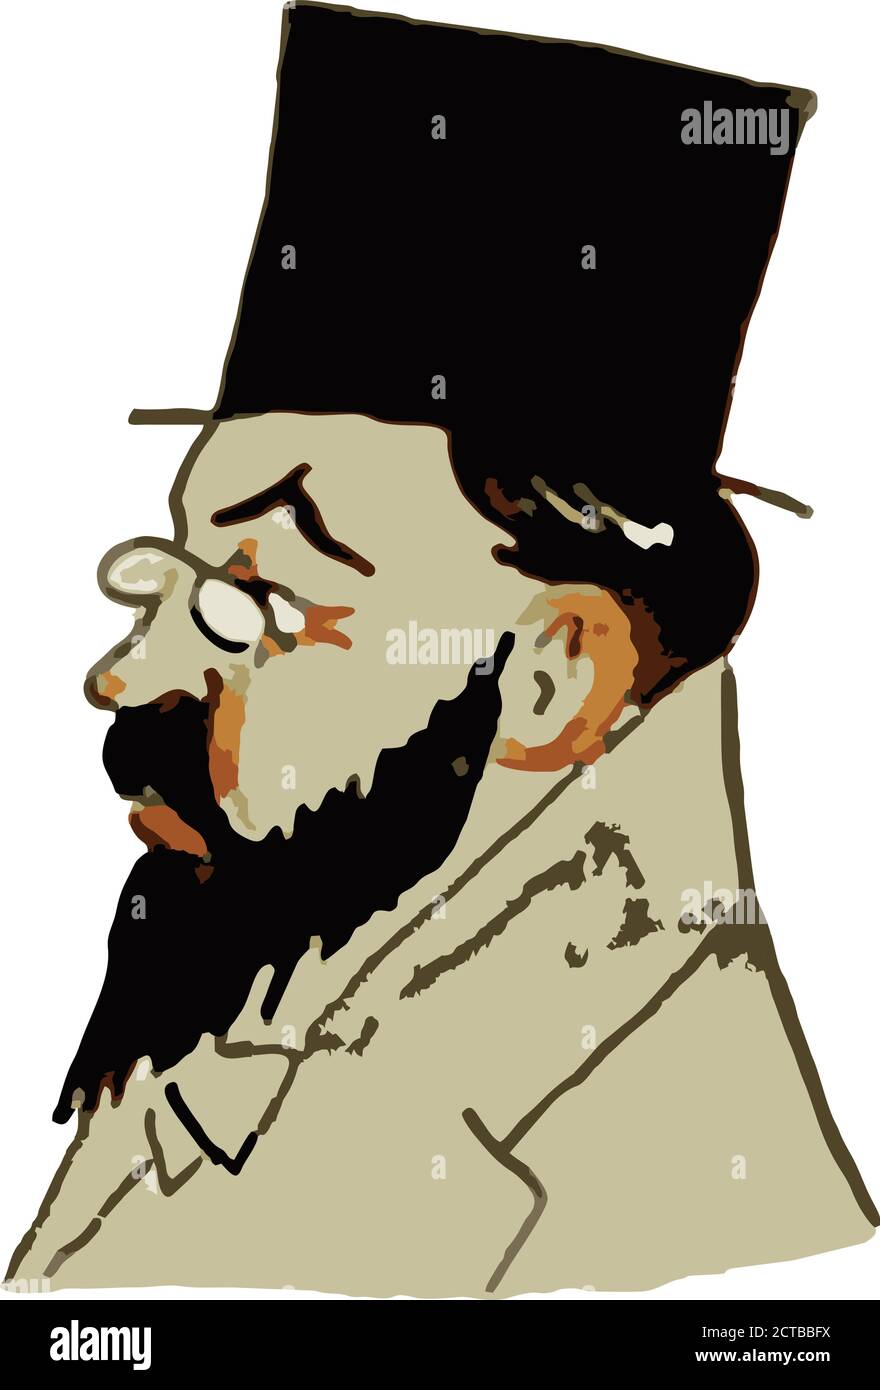 Vettore di celebrità di la Belle Epoque. Francia Henri de Toulouse-Lautrec-Monfa (1864 – 1901), comunemente noto come solo Henri de Toulouse-Lautrec, è stato Illustrazione Vettoriale